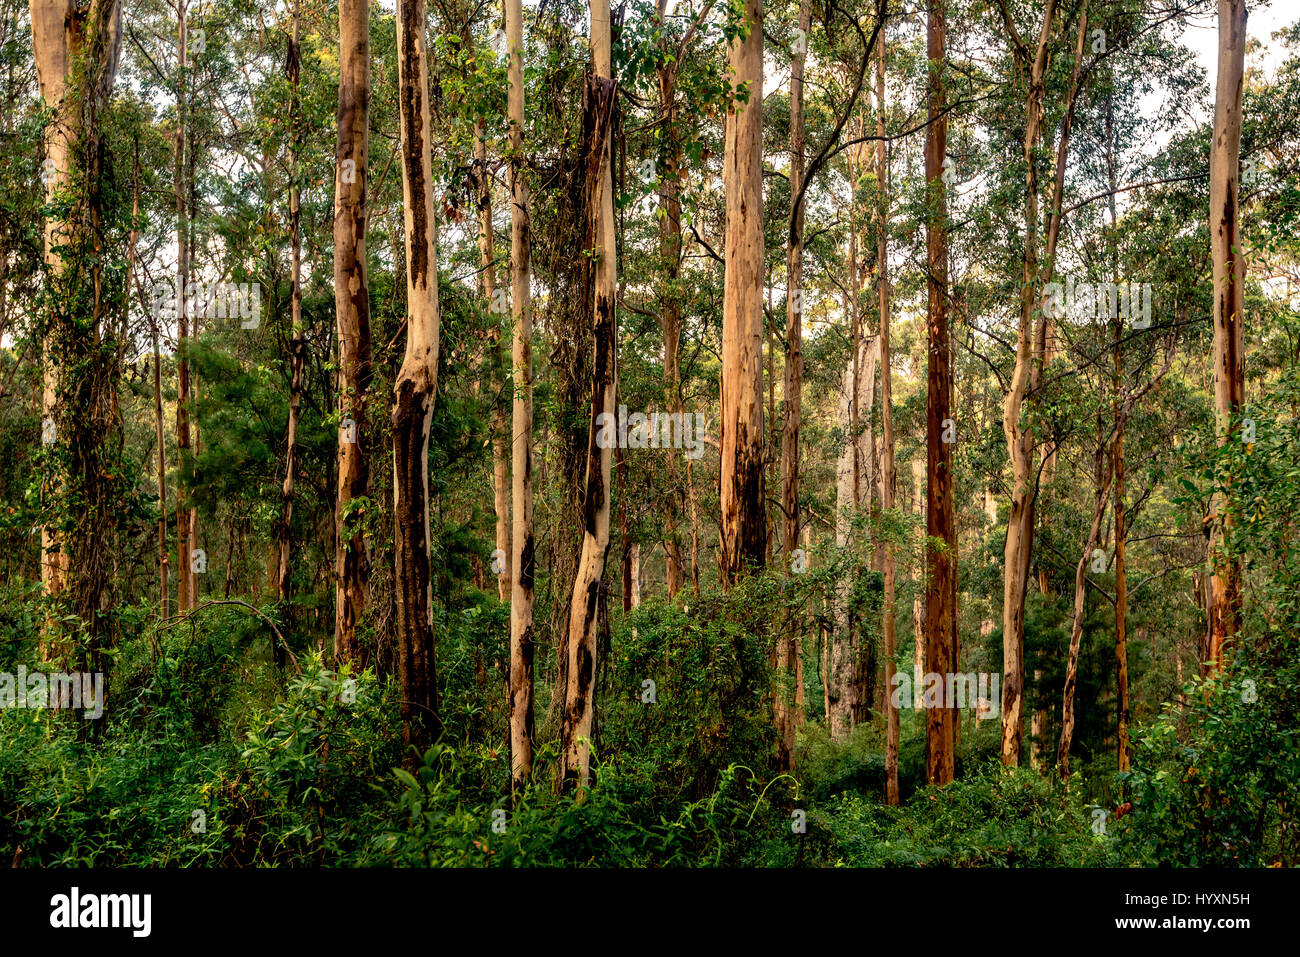 Karri foresta del sud-ovest del Western Australia è uno dei più alti del mondo. Karri alberi possono crescere fino a 90 m (290 ft) di altezza. Foto Stock